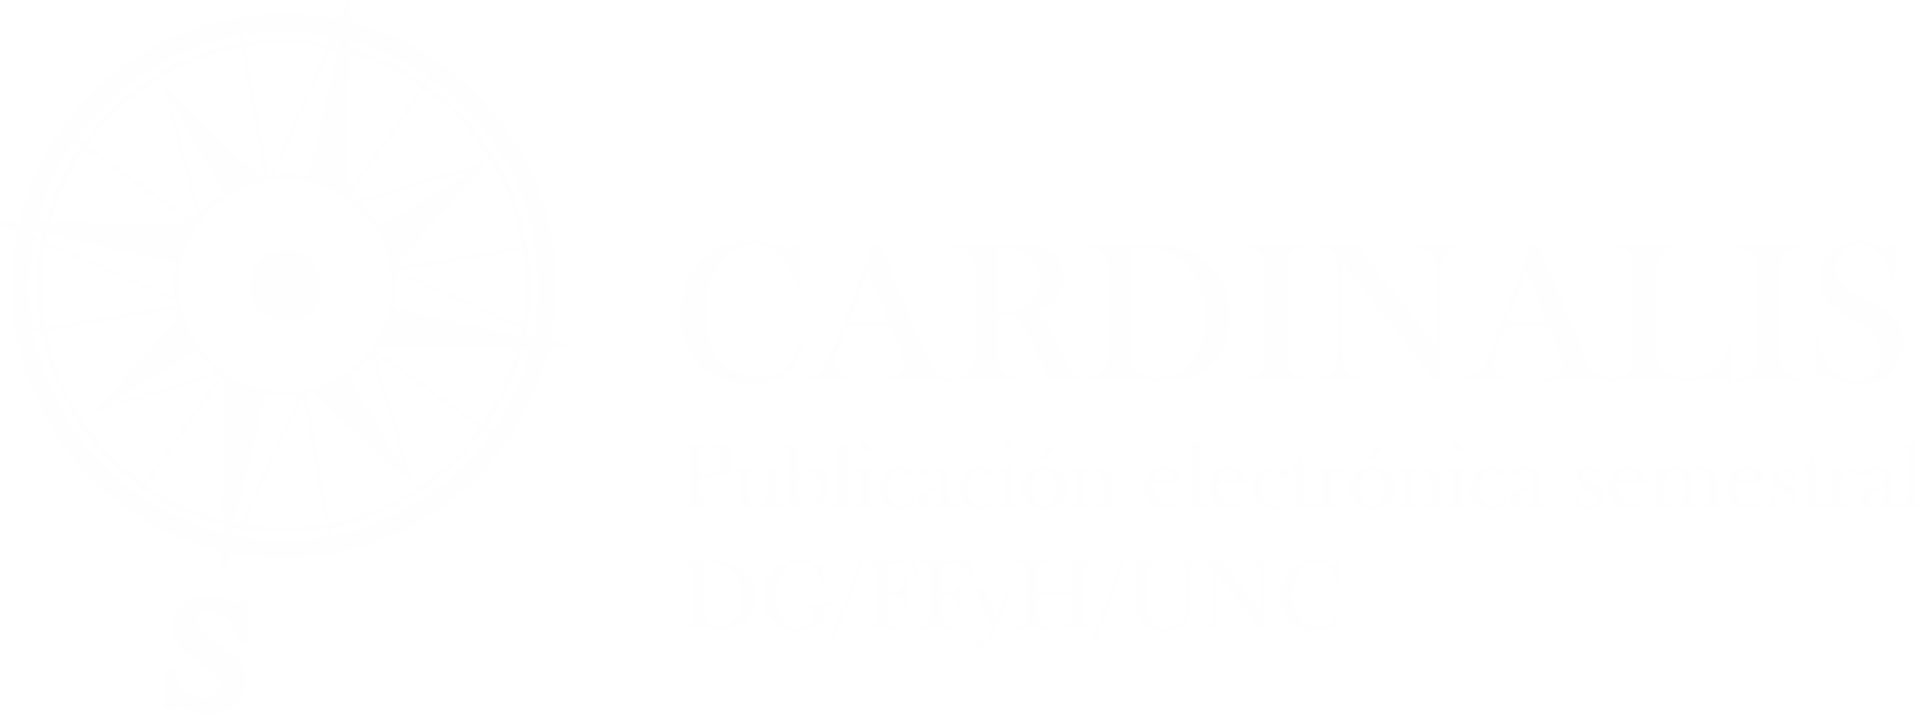 Revista Cardinalis. Departamento de Geografía Universidad Nacional de Córdoba, Argentina.